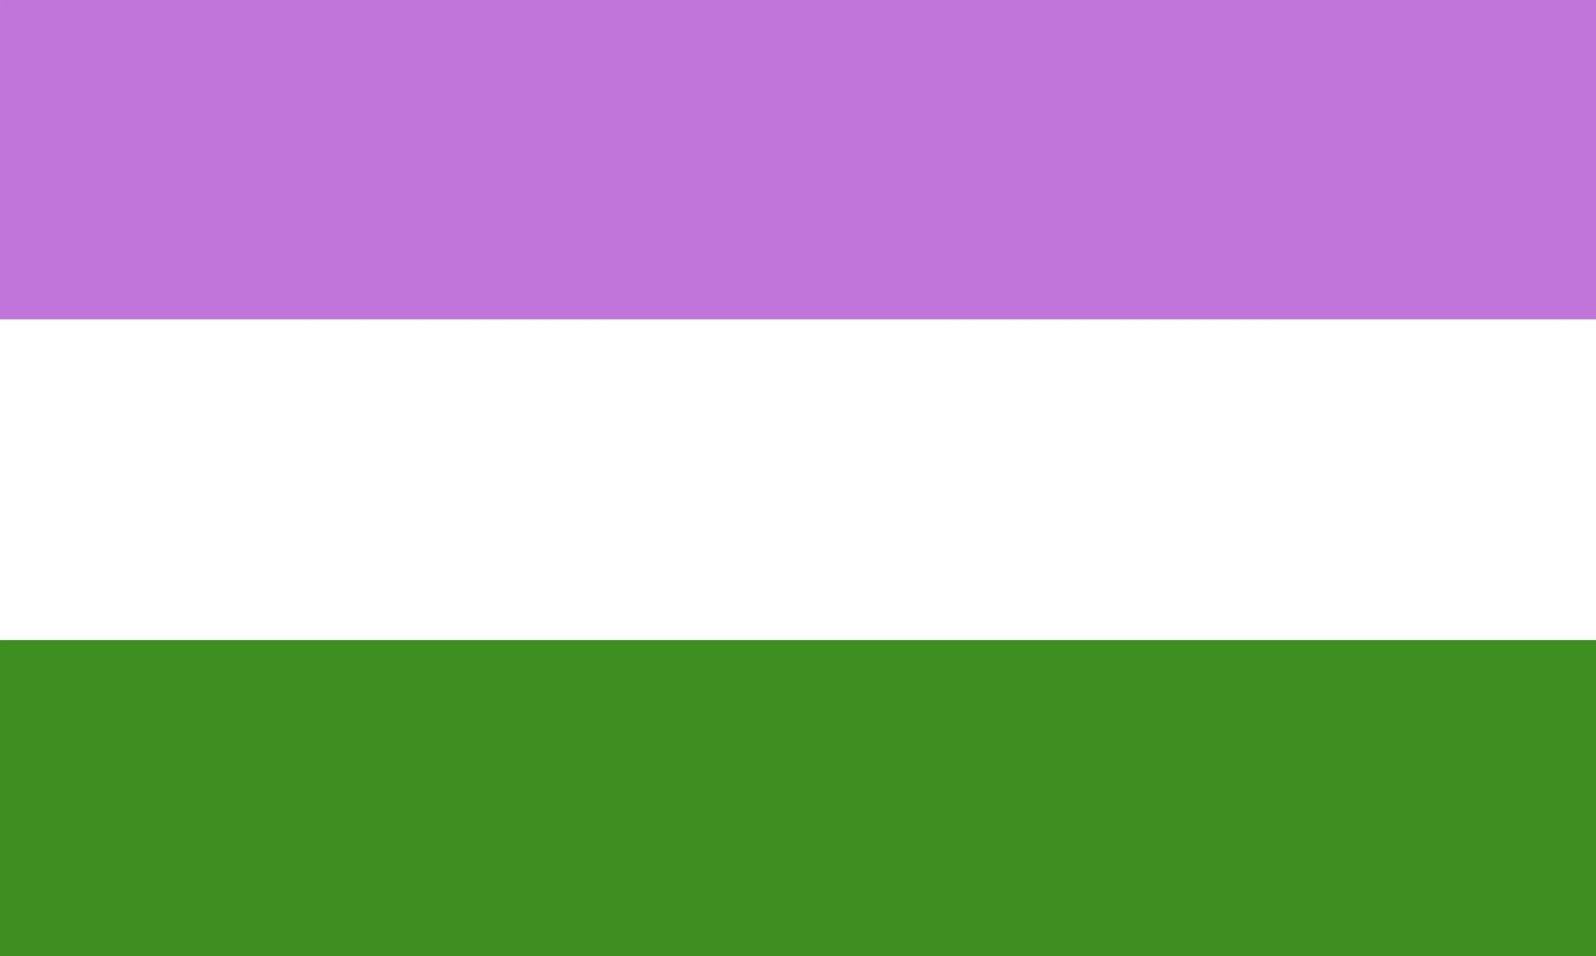 Bandeira queer em listras roxas, brancas e verdes